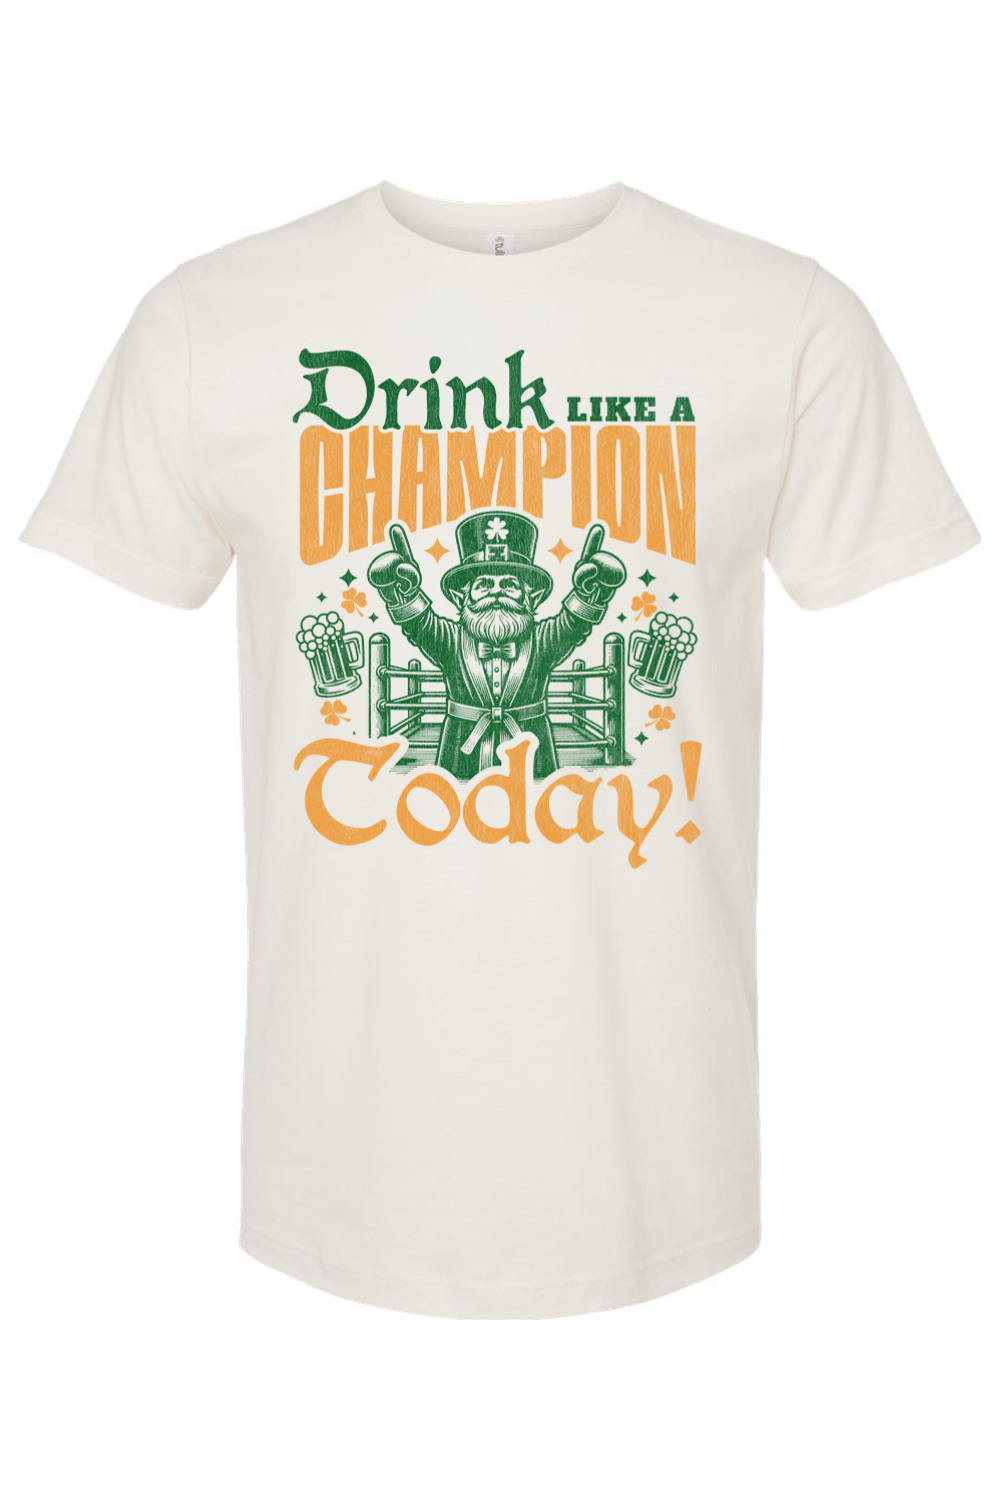 Drink Like a Champion Today! - Yinzylvania